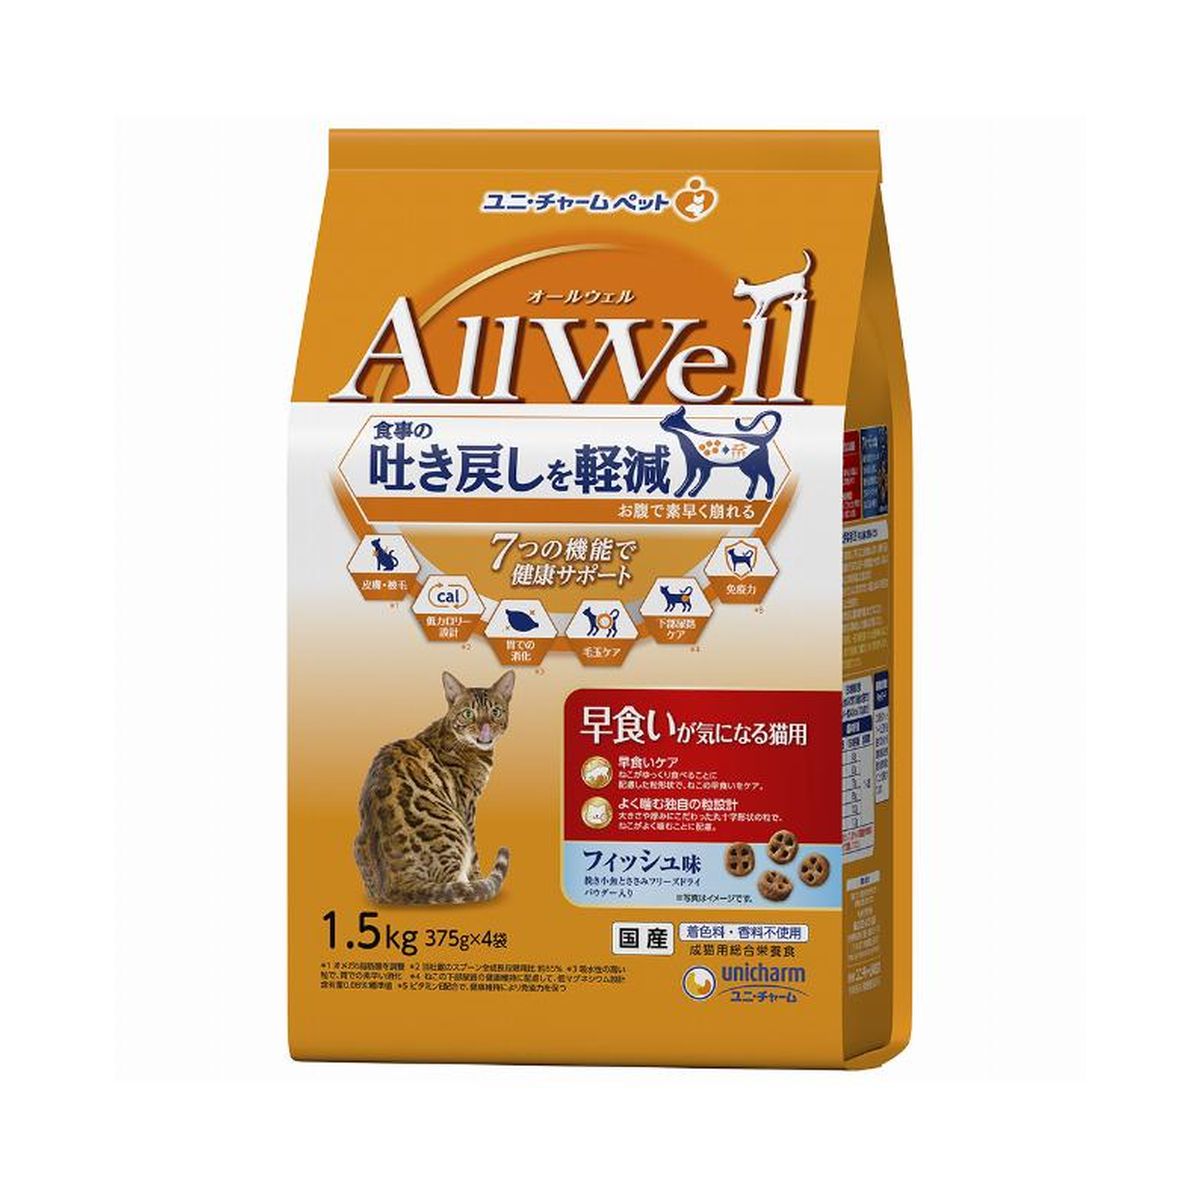 AllWell早食イガ気ニナル猫用フィッシュ味挽キ小魚トササミフリーズドライパウダー入リ 1.5kg×5